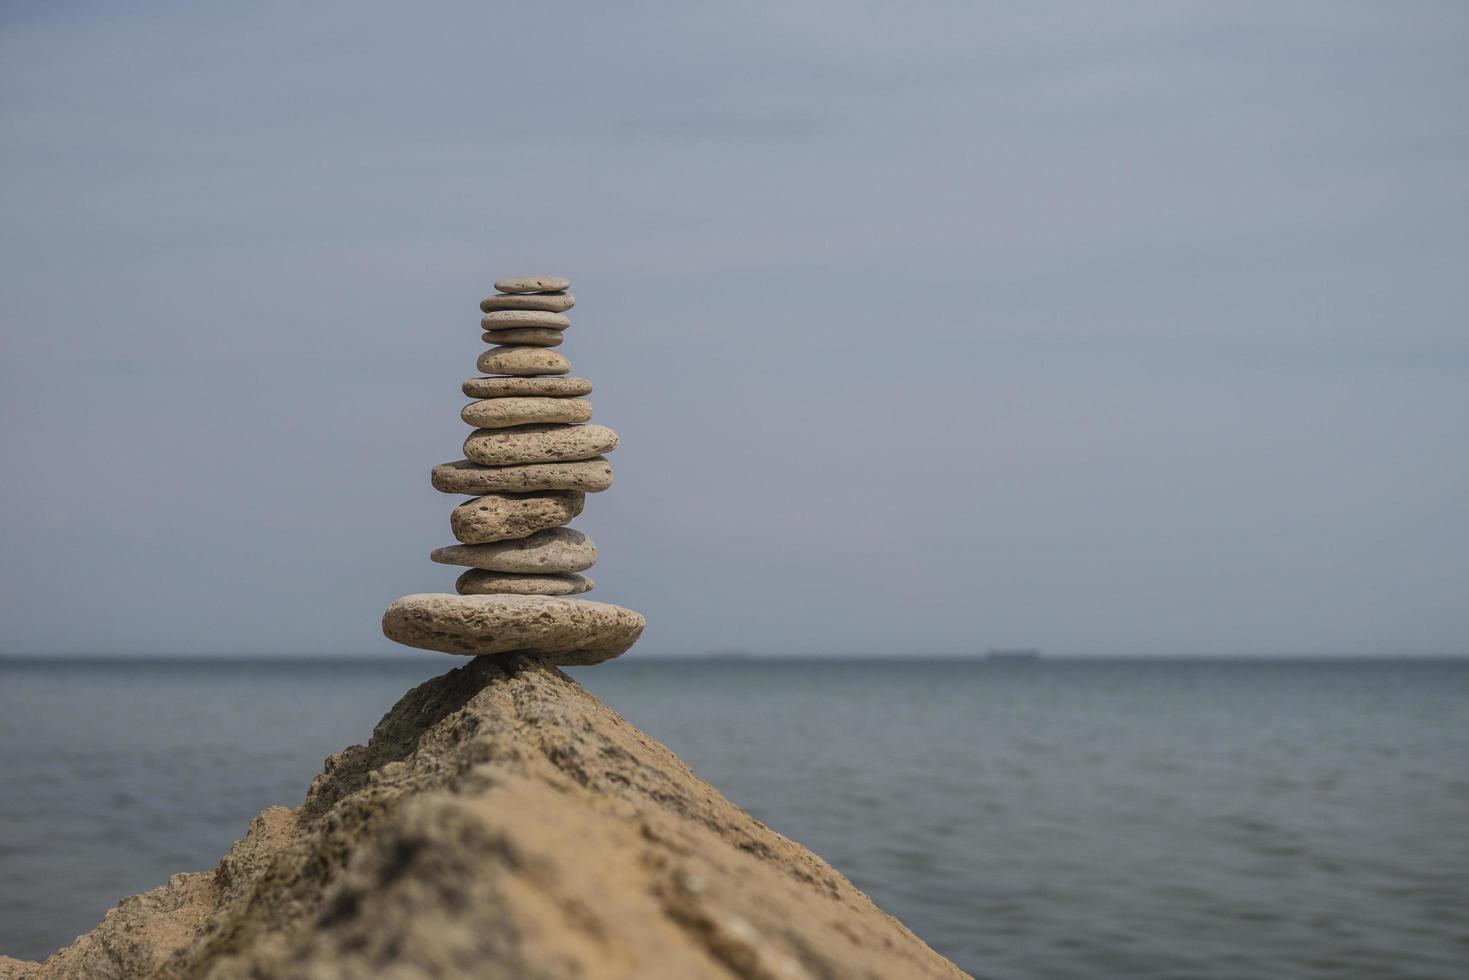 Equilibrio de pirámide de piedras sobre una gran piedra en la orilla del mar foto